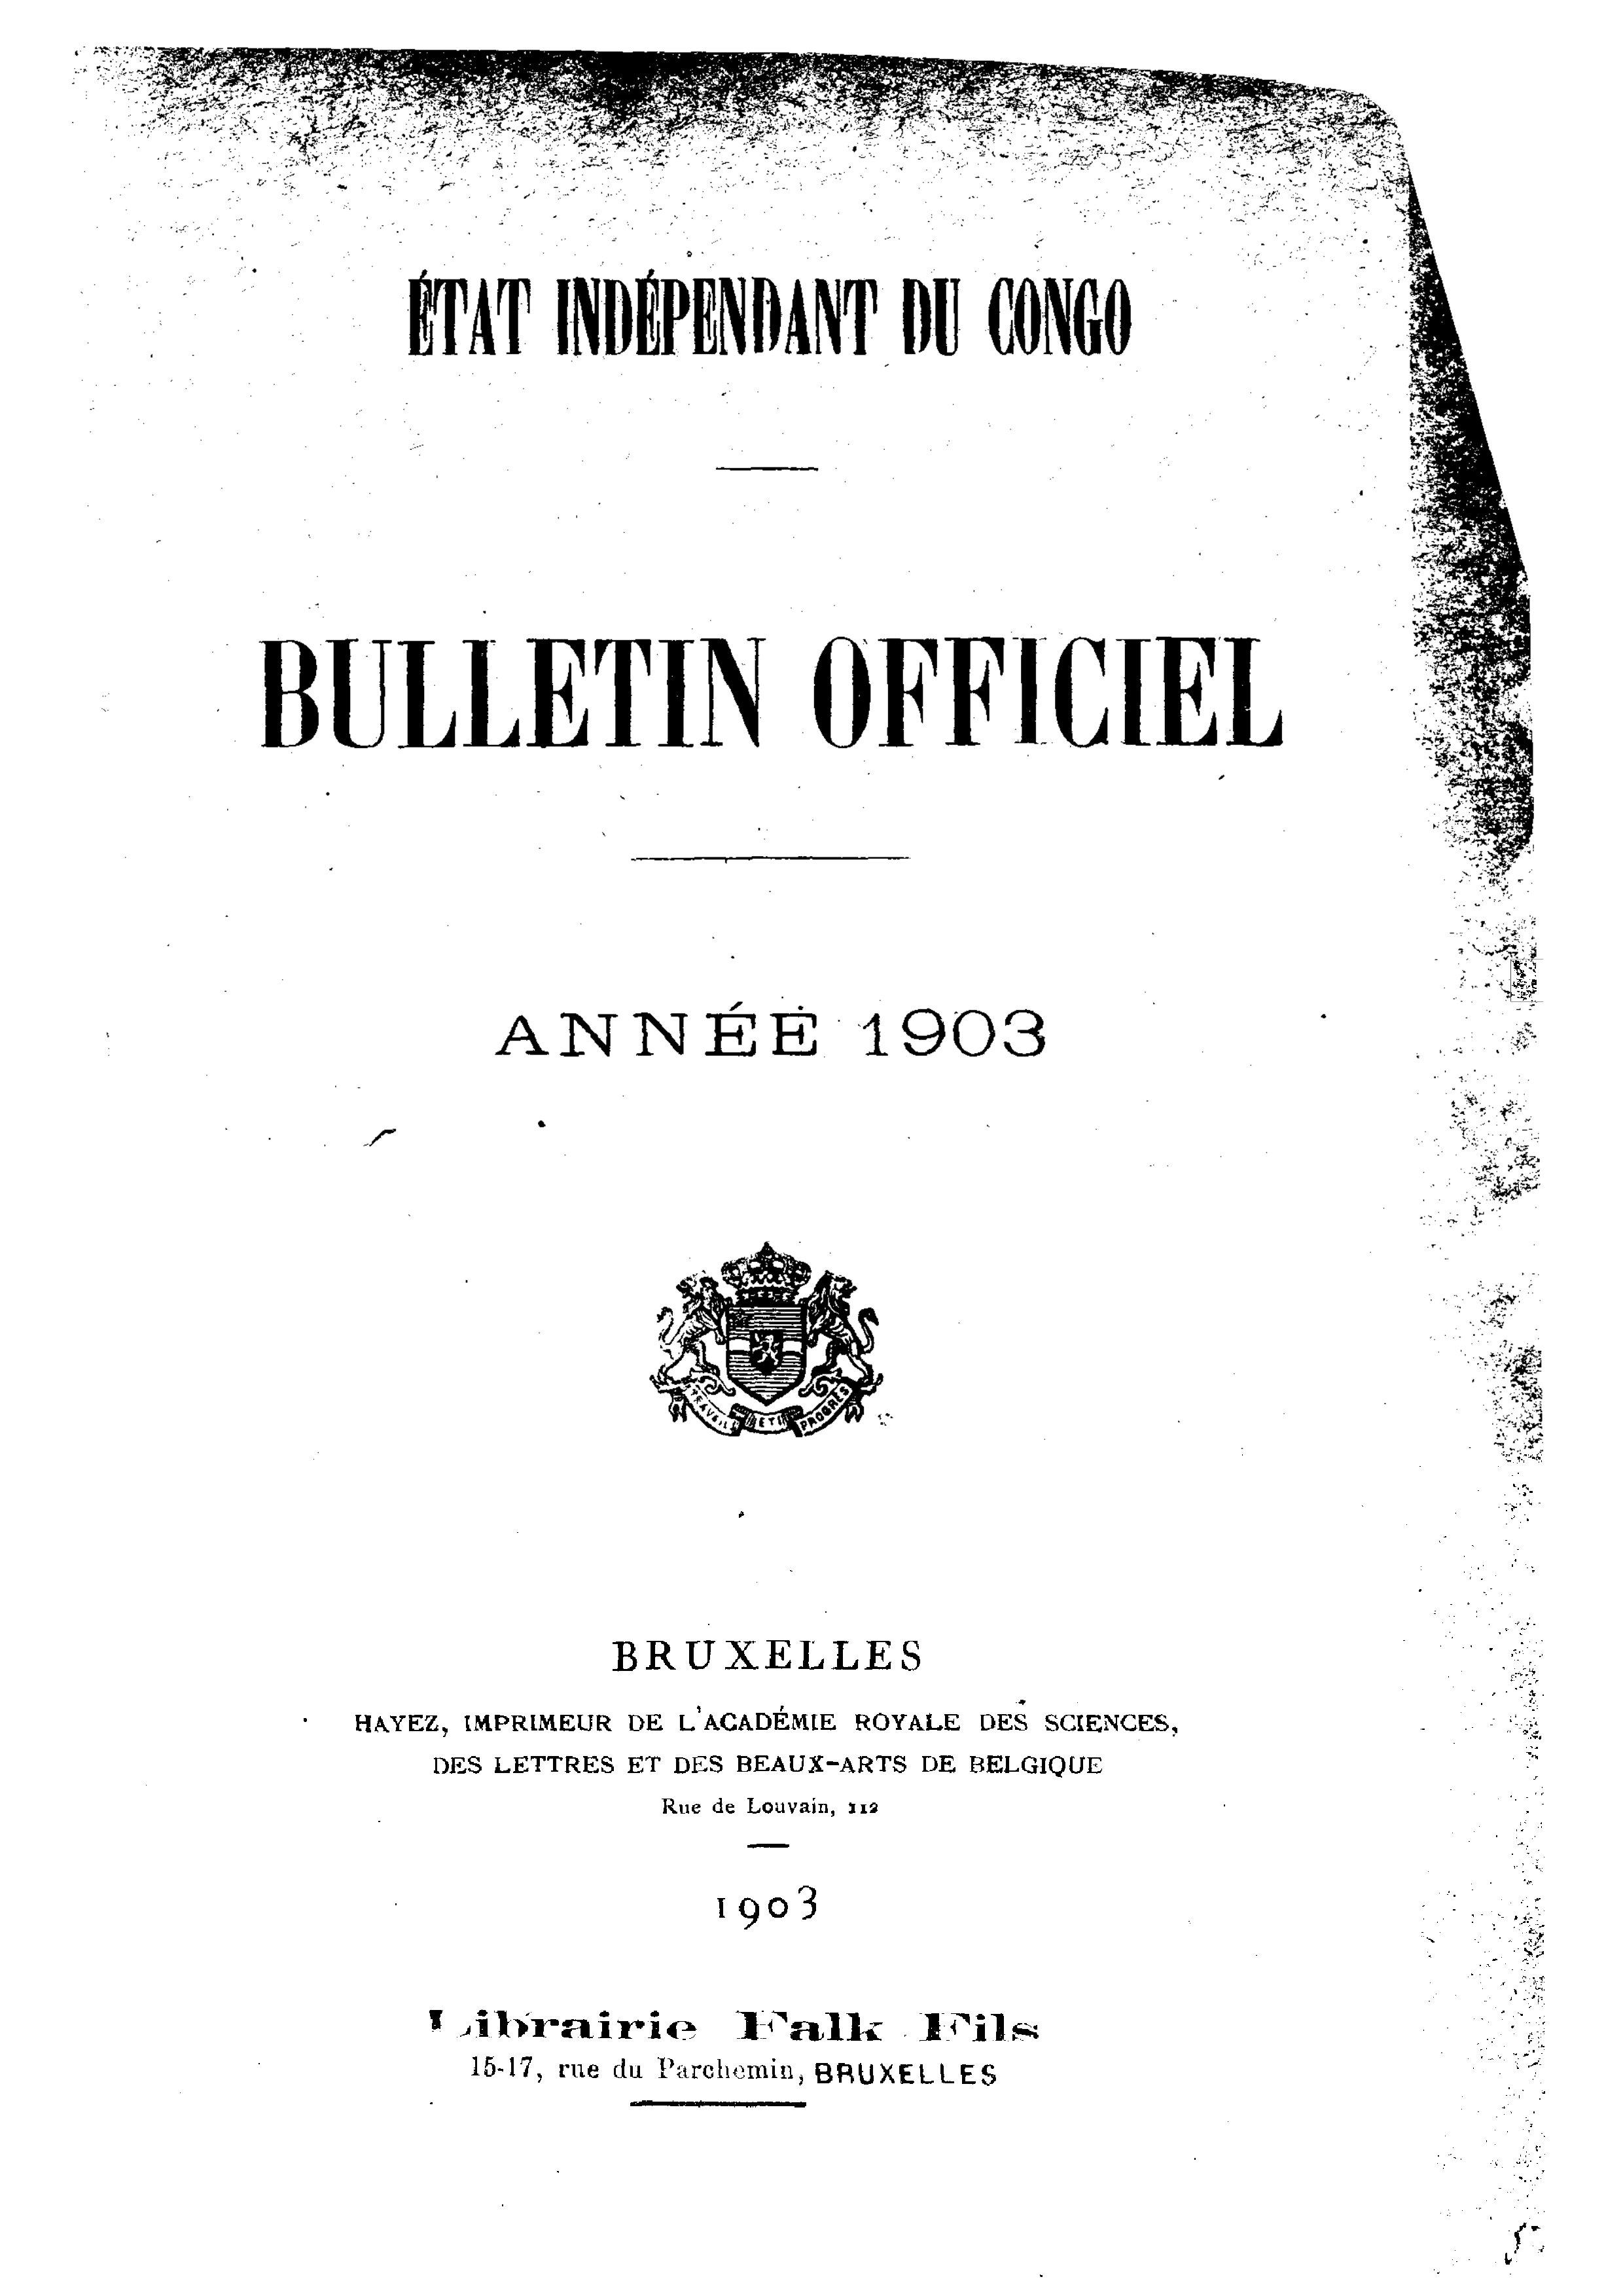 Book cover 202106132418: Etat Indépendant du Congo - roi Léopold II | Etat Indépendant du Congo - Bulletin Officiel – Année 1903